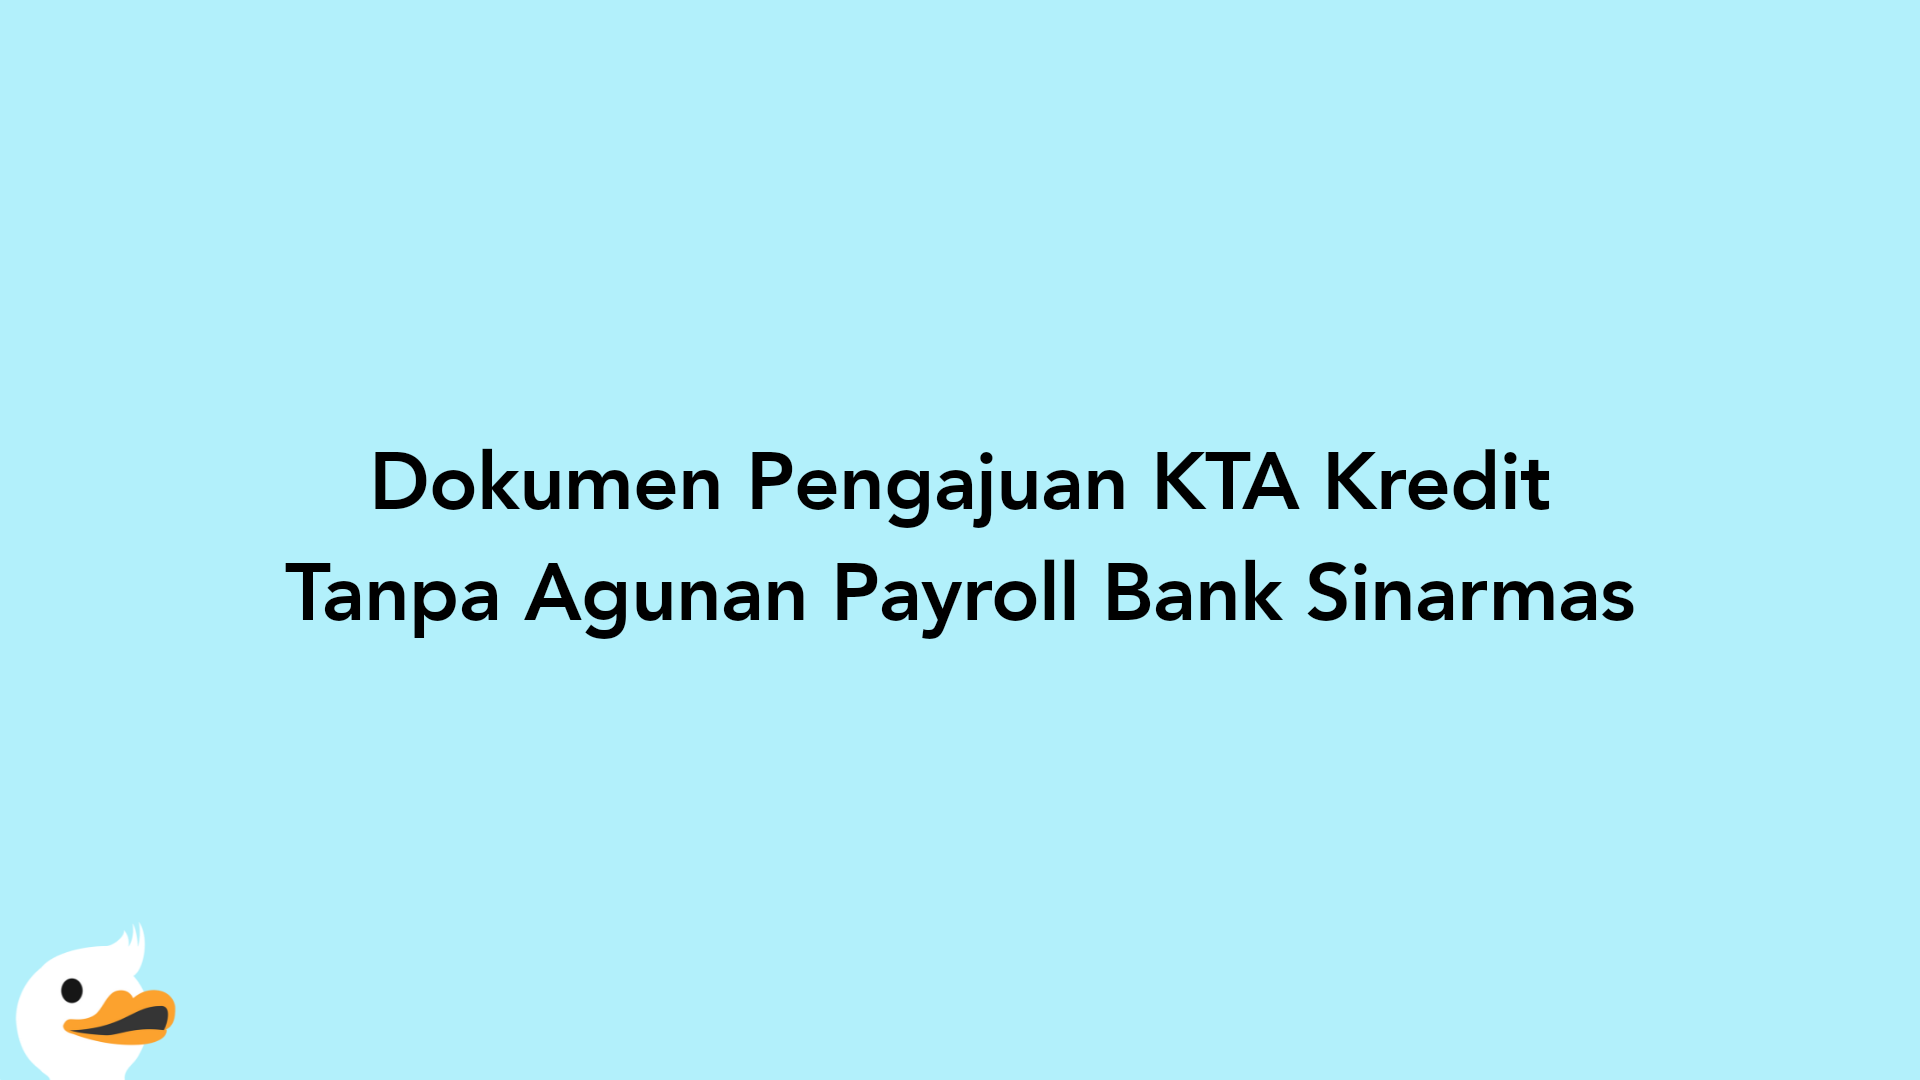 Dokumen Pengajuan KTA Kredit Tanpa Agunan Payroll Bank Sinarmas